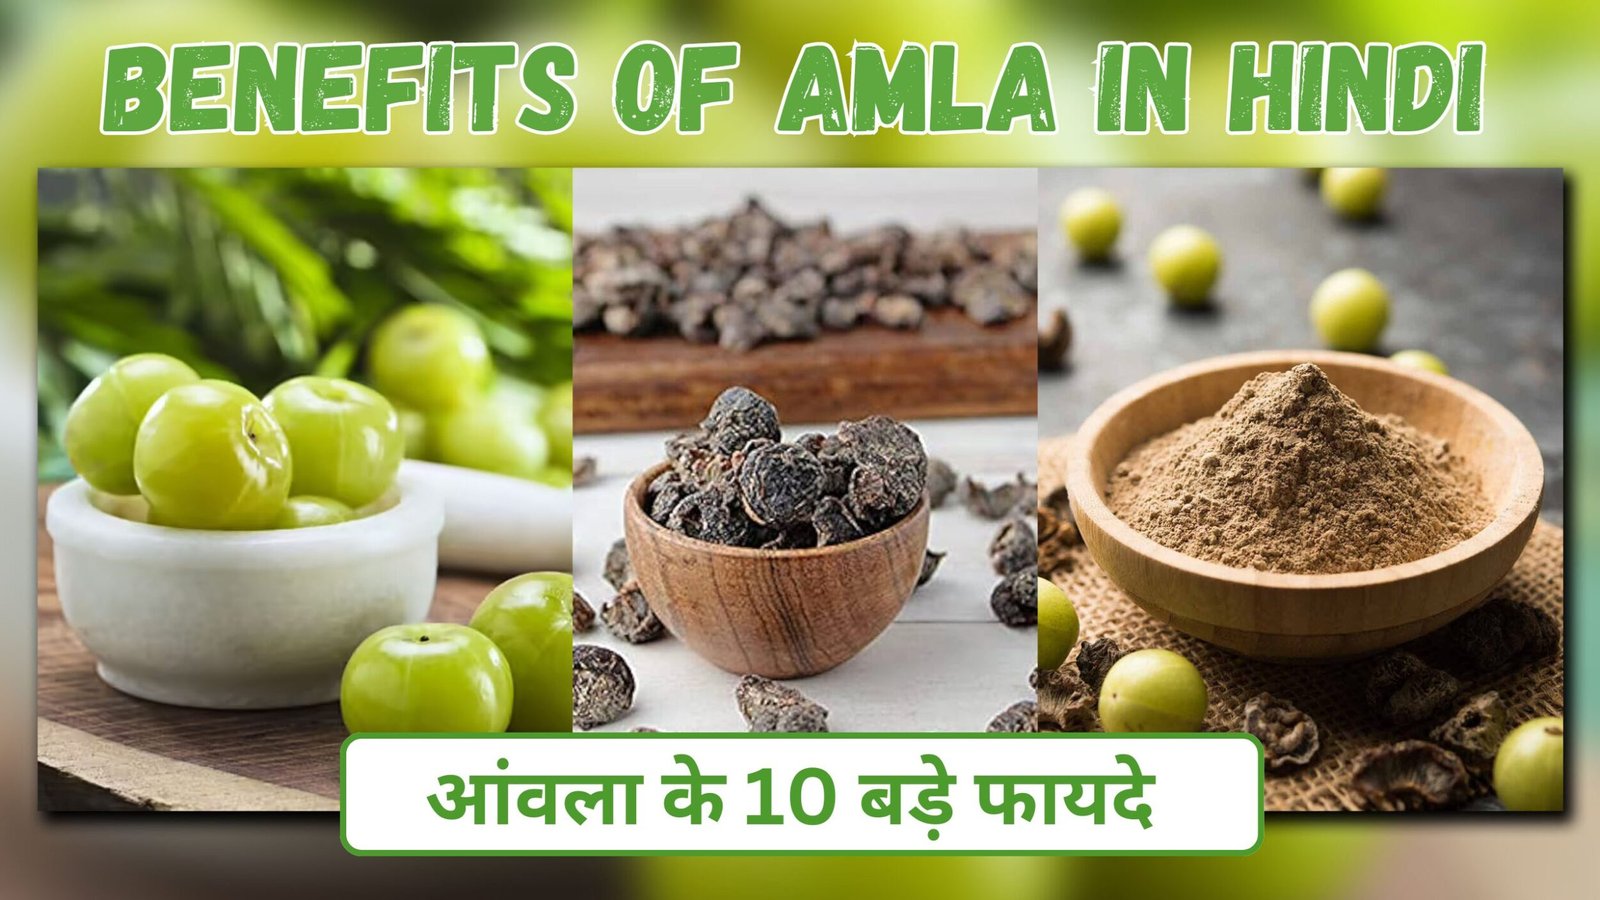 Benefits of amla in hindi | आंवला के 10 बड़े फायदे | 100 रोगों की 1 दवा